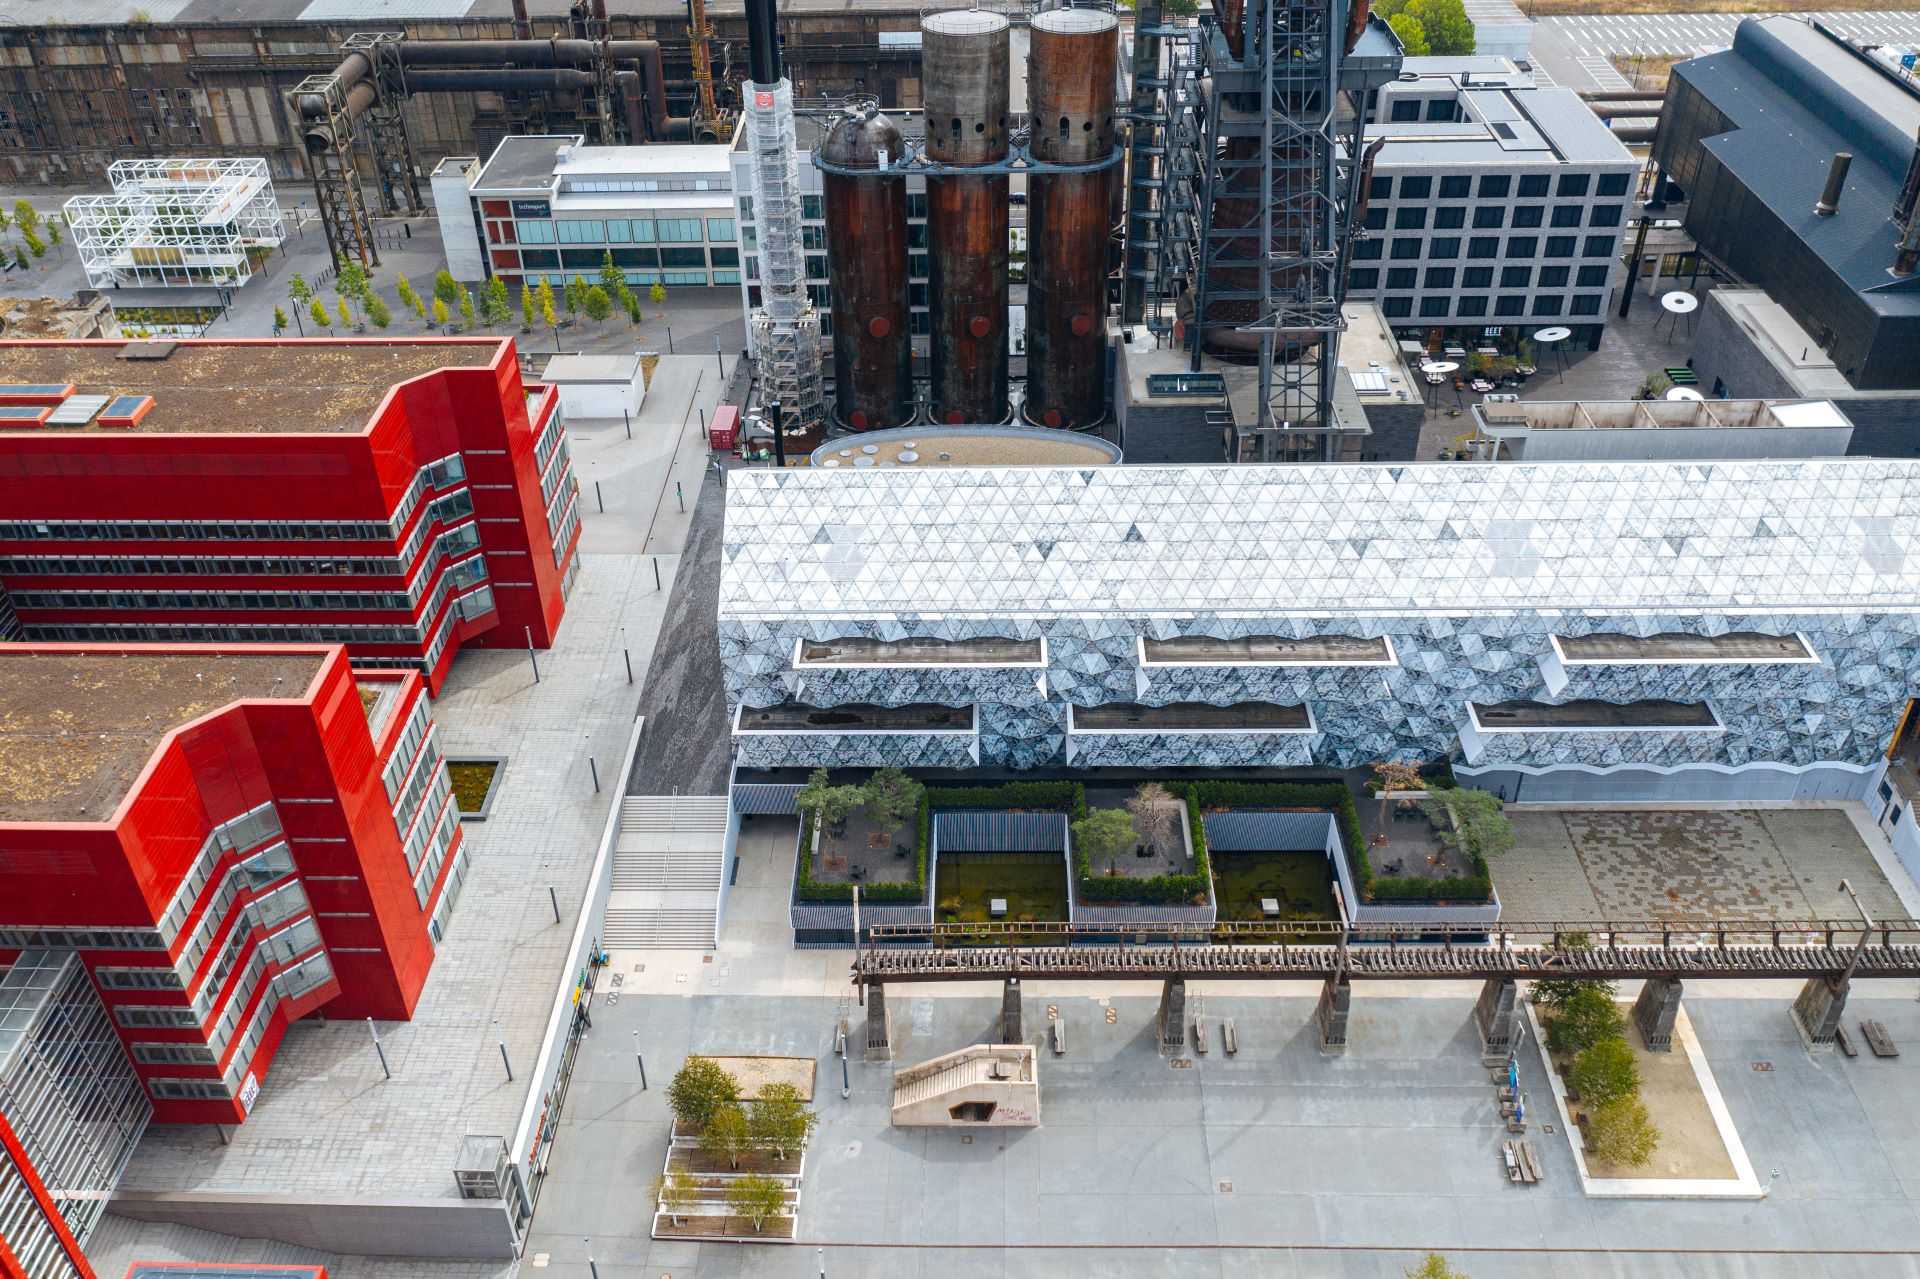 Hier sind die Universitätsgebäude rund um den Minett-Komplex gut sichtbar. Neue rot-weiße Universitätsgebäude im Vordergrund kontrastieren mit dem Industriebau im Hintergrund.